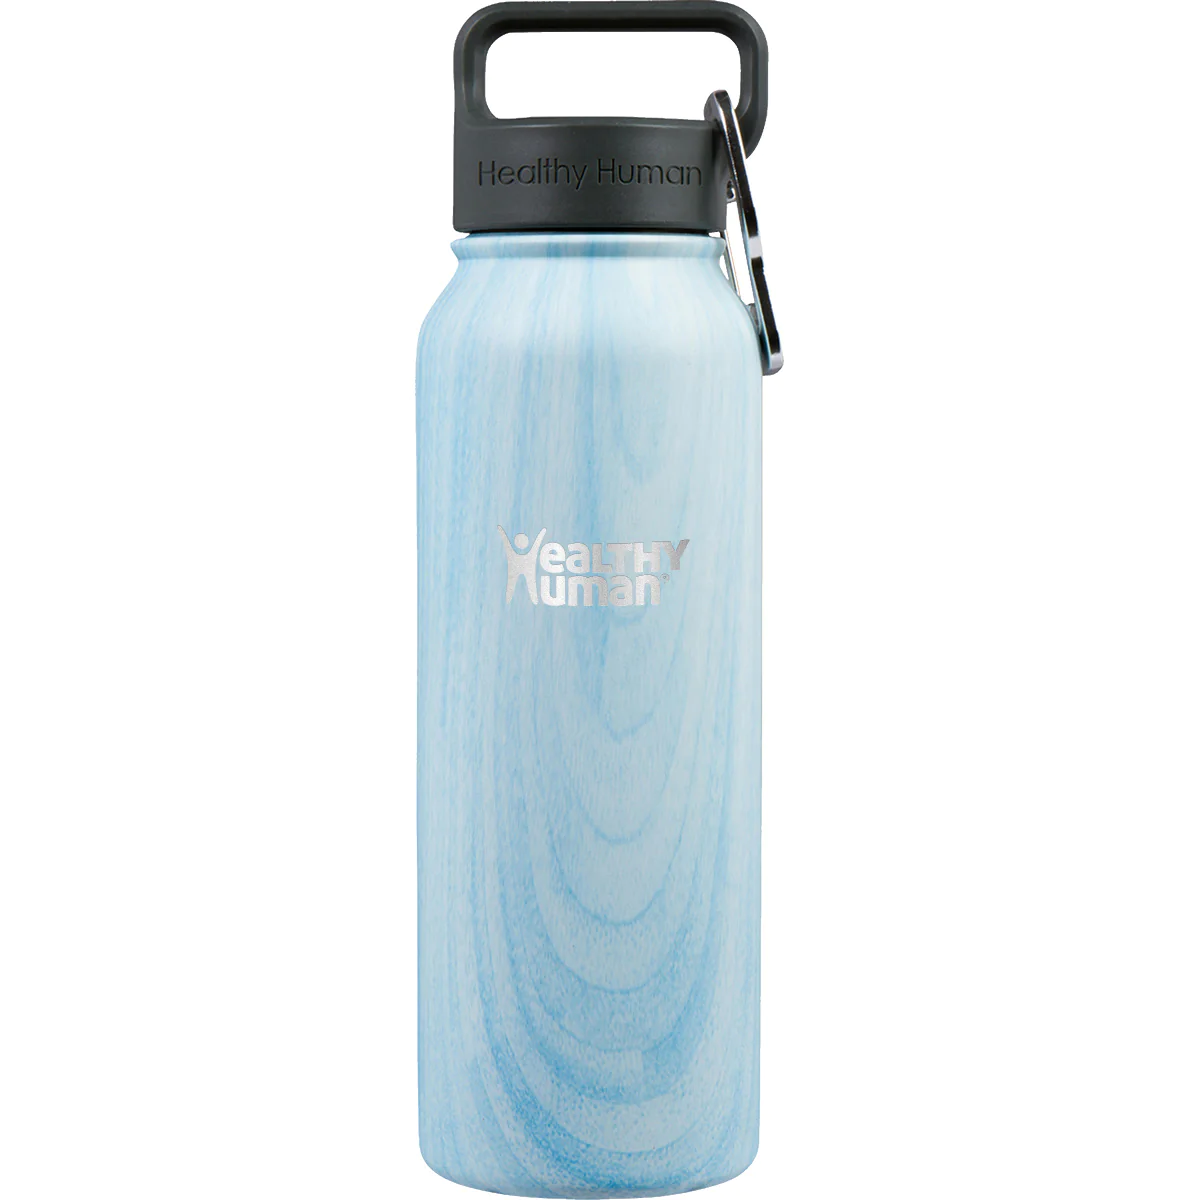 Θερμός Stein Bottle 21oz/621mL – Blue Wood